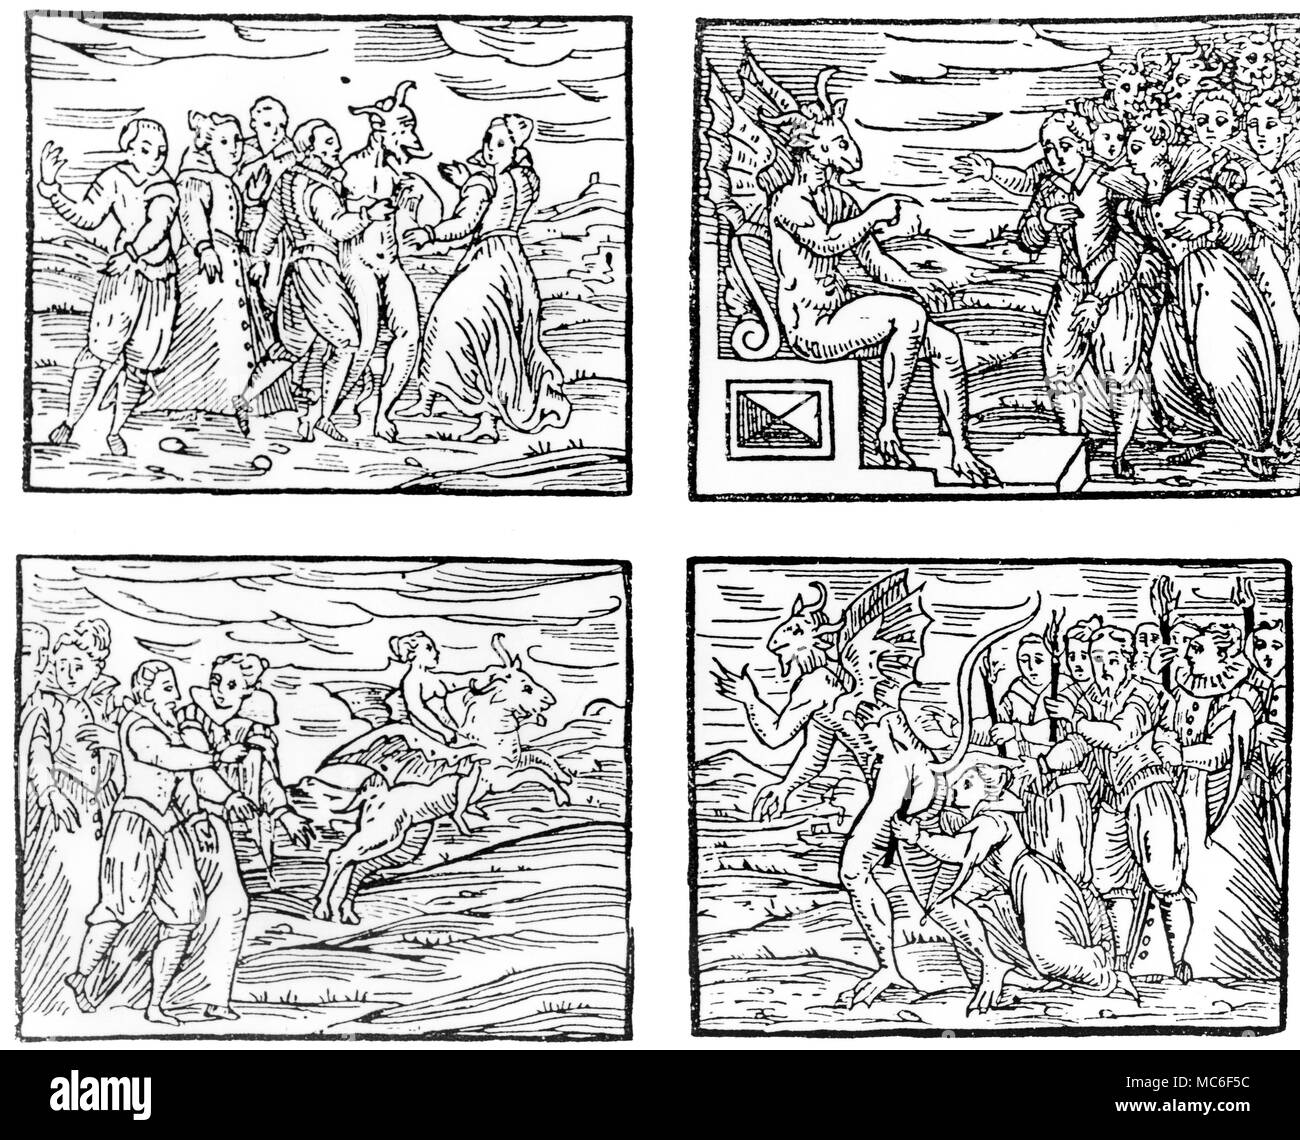 Les activités de sorcellerie, de la 1608 eition de Guazzo's Compendium Maleficarum" - Danse avec les sorcières Diable. Sermon à donner diable au sabbat des sorcières. Transvecting sorcières sur la chèvre. Gicing le baiser de sorcière infame. Banque D'Images